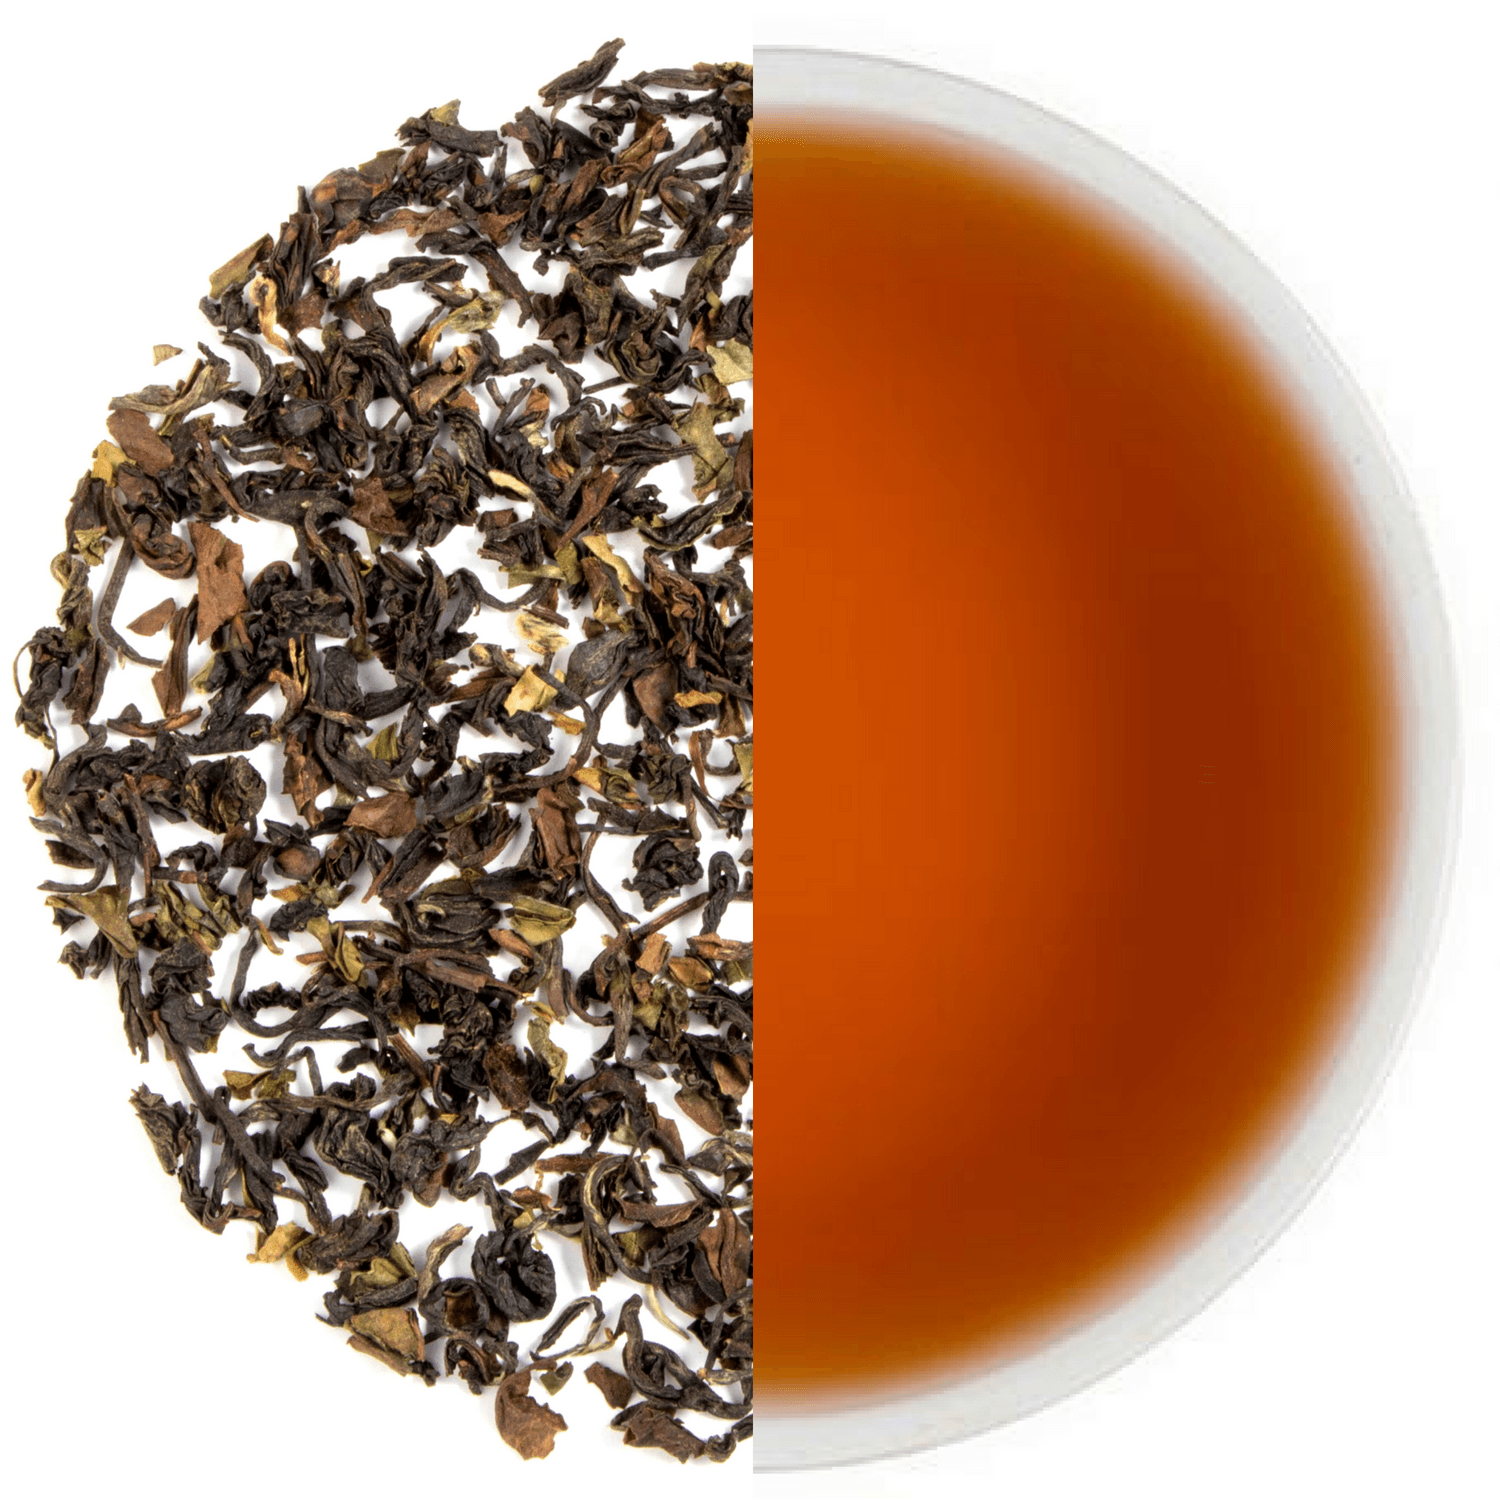 Makaibari Organic Black Tea - Tearaja